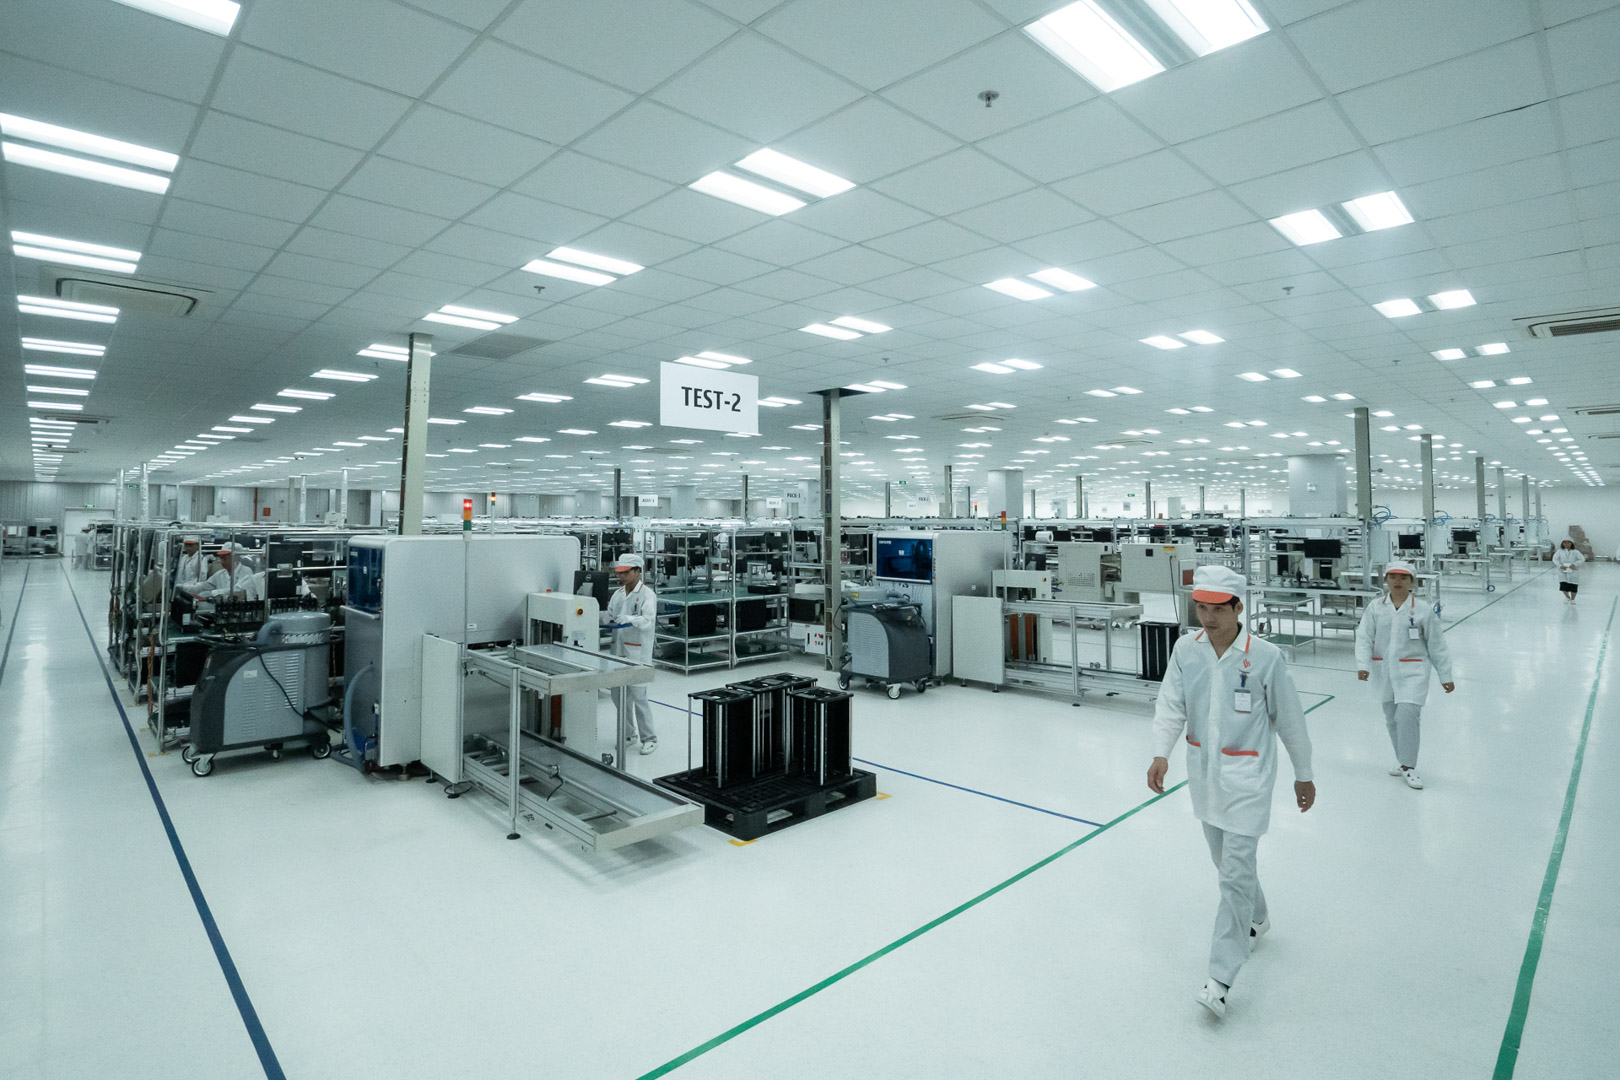 Nhà máy sắp tới của VinSmart sẽ có công suất 125 triệu sản phẩm/năm. Nhà máy được thiết kế tuân thủ nghiêm ngặt các tiêu chuẩn quốc tế dành cho các nhà máy sản xuất thiết bị điện tử, viễn thông như IPC-A-610, TL 9000